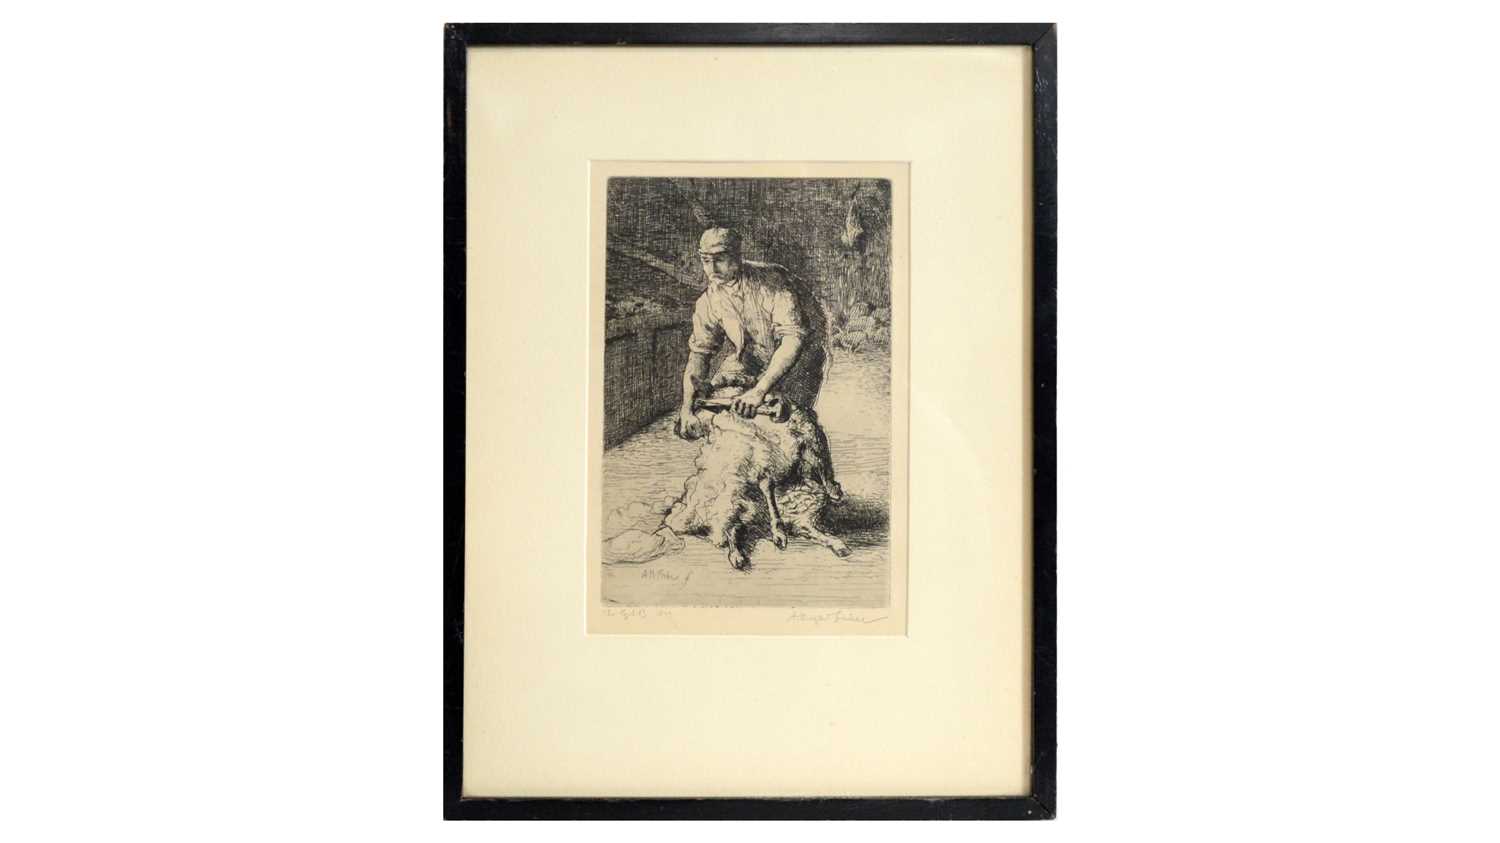 Lot 577 - Alfred Hugh Fisher - Sheep Shearing (1899) | etching